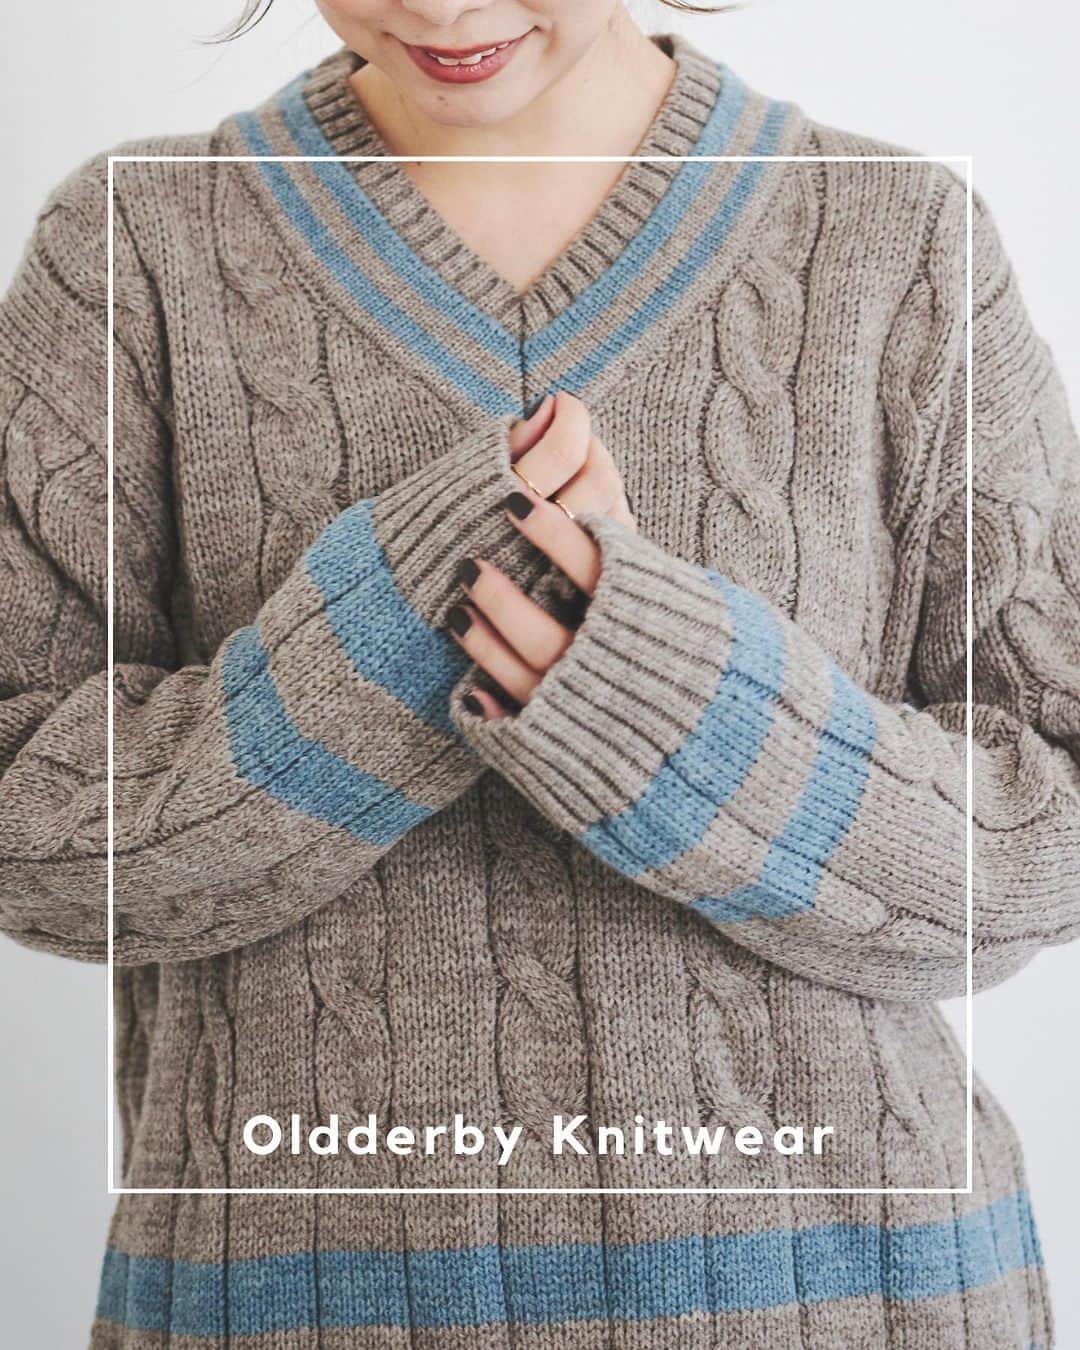 le. coeur blancのインスタグラム：「【 Oldderby Knitwear 】 ⁡ ニット製品の本場と言われる英国で100年以上の歴史を持つ老舗ニットファクトリーが手掛けるブランド。 ⁡ ベーシックだからこそこだわりが詰まった一枚は、今っぽいスタイルにもよく馴染む逸品。 流行り廃りを感じさせない上質で端正なニットは長く愛用したい冬のマストアイテム。  ⁡ ⁡ ▶︎着用アイテムは画像タップでcheck！  | ITEM |  Oldderby チルデンニット ¥21,780 size : 38 col : モカ / オフ no. 3138024101  Oldderby ハーフジップニット ¥24,200 size : 38 col : オフ/ ライトグレー no. 3138024100  ⁡  _____________________ ⁡ ⁡ < Event > ⁡ ◾️NOVELTY FAIR 税込22,000円以上のご購入でノベルティBAGを先着でプレゼント 10/25(水)start〜なくなり次第終了 ⁡ ◾️レビュー投稿キャンペーン 期間中、レビュー投稿1件につき100ptを後日プレゼント 10/25(水)〜11/5(日) ⁡ その他、各店イベントも盛りだくさん！ くわしくはお近くのショップにおたずねください。 ⁡ ⁡ ⁡ < 11月Insta Live Schedule > ⁡ 11/2(木) 「アウターのご紹介」ルミネ荻窪店 11/8(水) 「ショップクルーズ」ディアモール大阪店 11/16(木) 「スタッフ別コートスタイリング」有楽町マルイ店 11/21(火) 「ニットをたっぷりご紹介」天王寺ミオ店 11/29(水)「12月入荷新作の先見せ」プレスルーム ⁡ ⁡ ※日時や内容は変更になる場合もございます。 　詳しくは前日のストーリーズでお知らせします。 ⁡ ⁡ ⁡ ⁡ ⁡ ⁡ ⁡ ⁡ #lecoeurblanc #ルクールブラン #le_23aw #autumn #winter #le_web #oldderbyknitwear #オールドダービーニットウェア #ニット #チルデンニット #ウールニット」